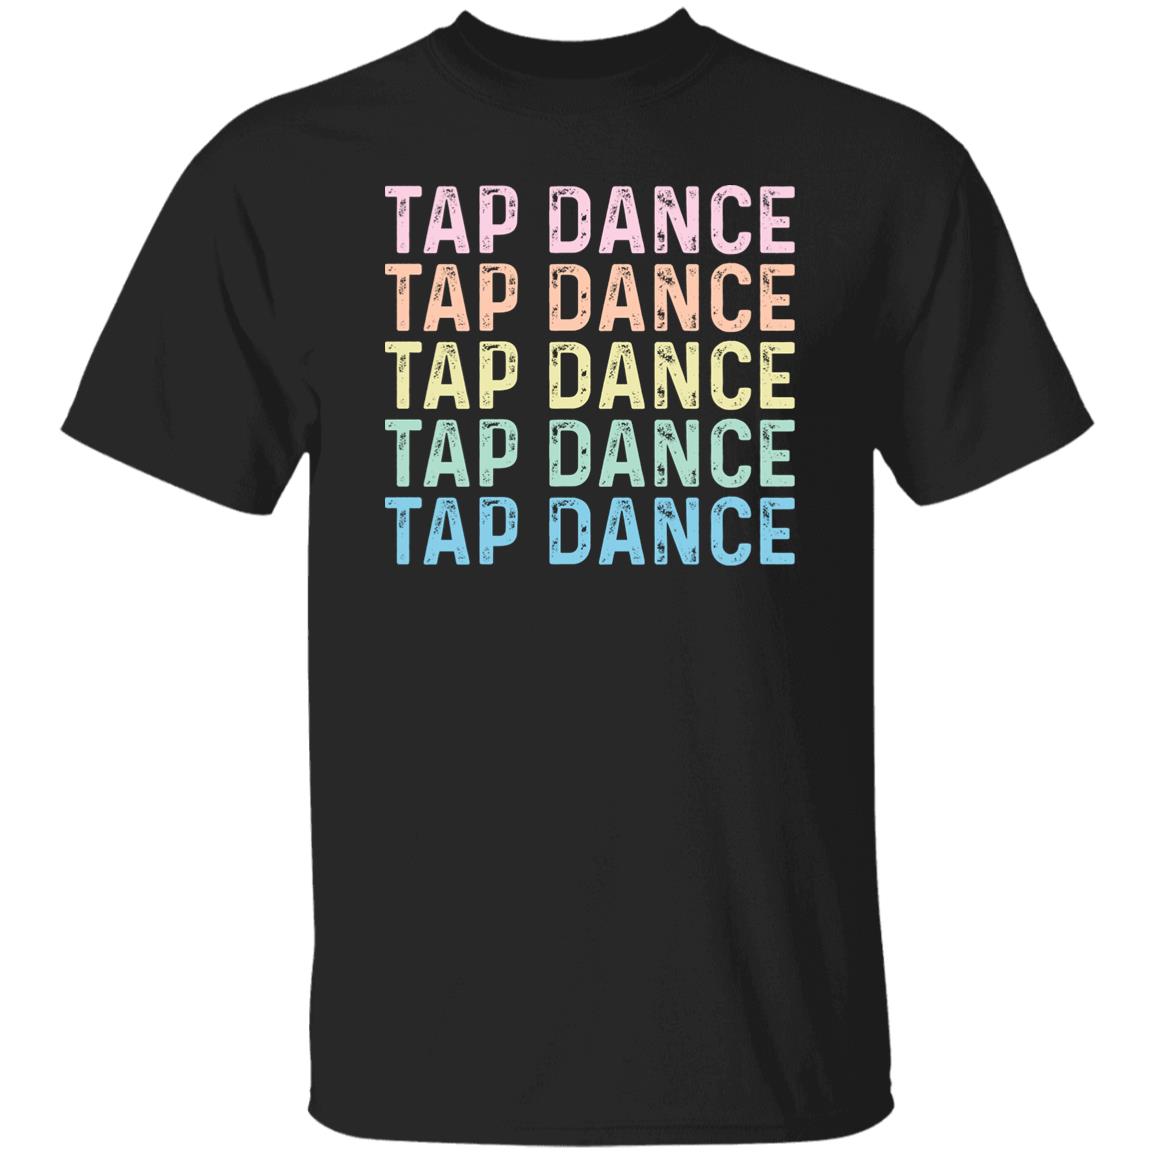 Tap Dance Unisex Shirt, tap dancer tee Black S-2XL-Black-Family-Gift-Planet